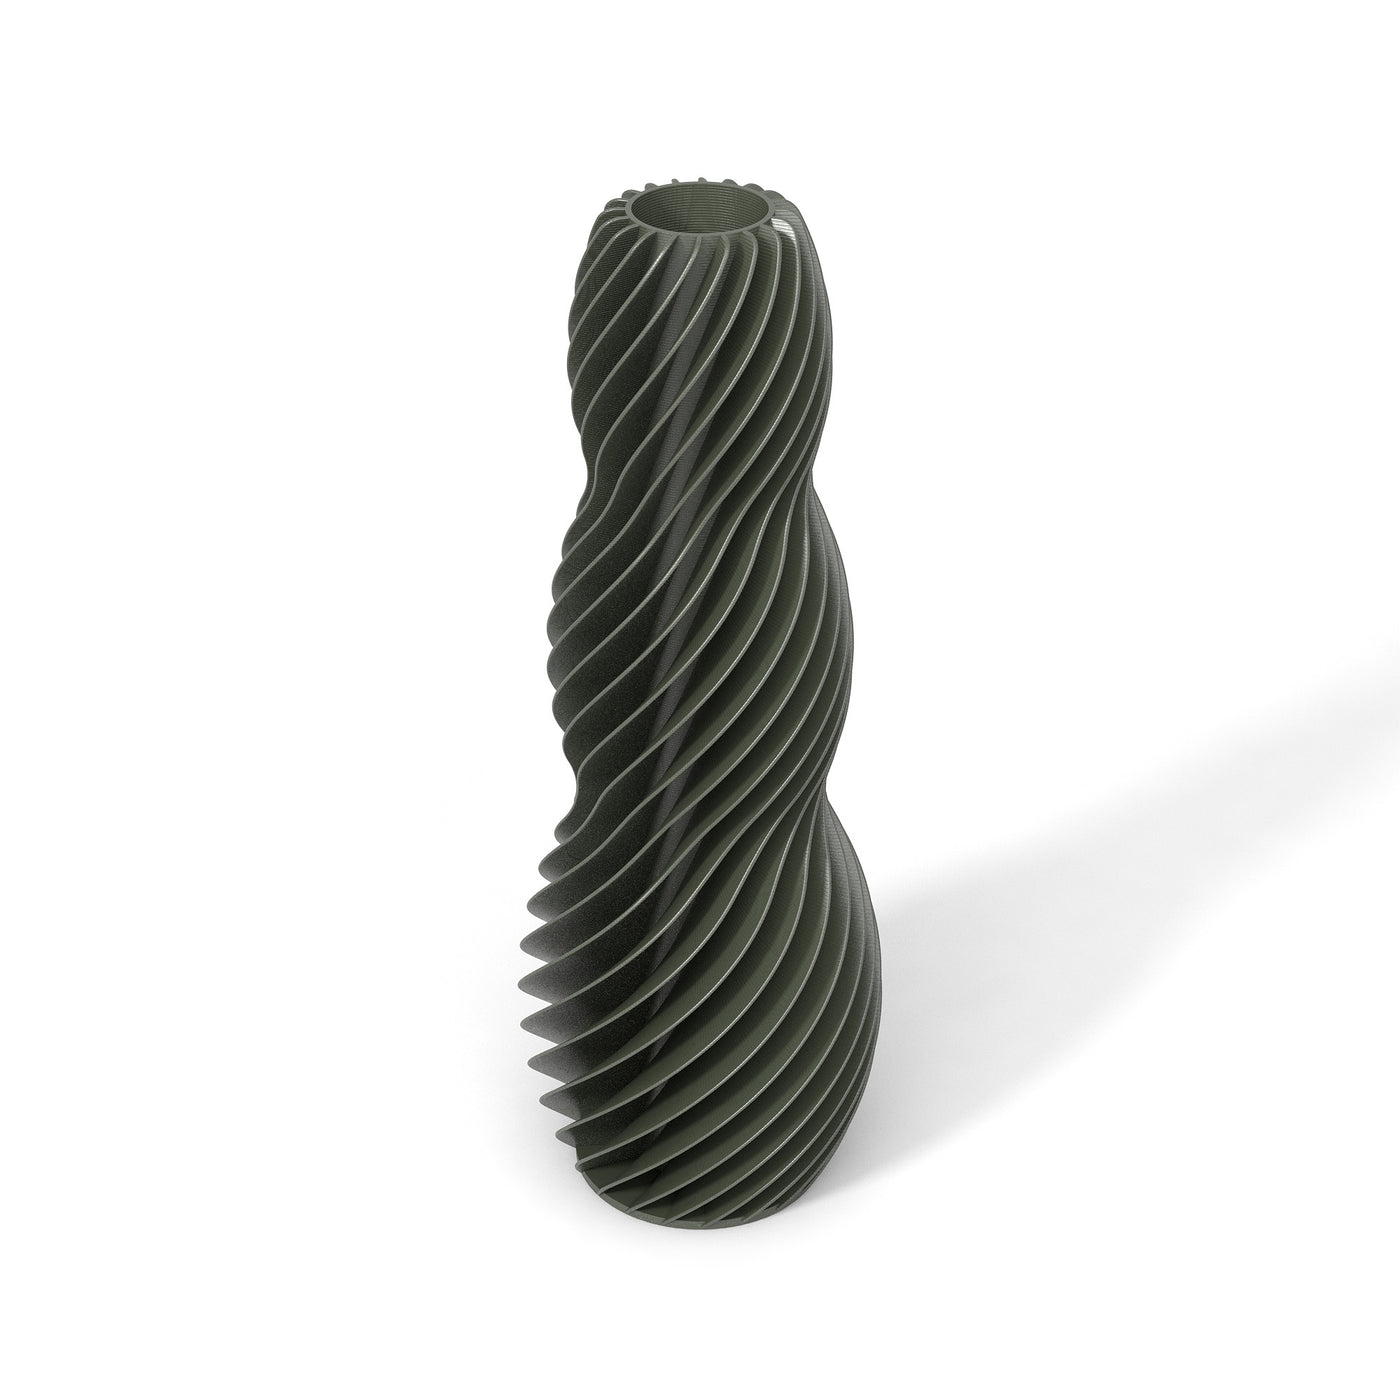 Tmavě zelená designová váza 3D print SPIRAL 3